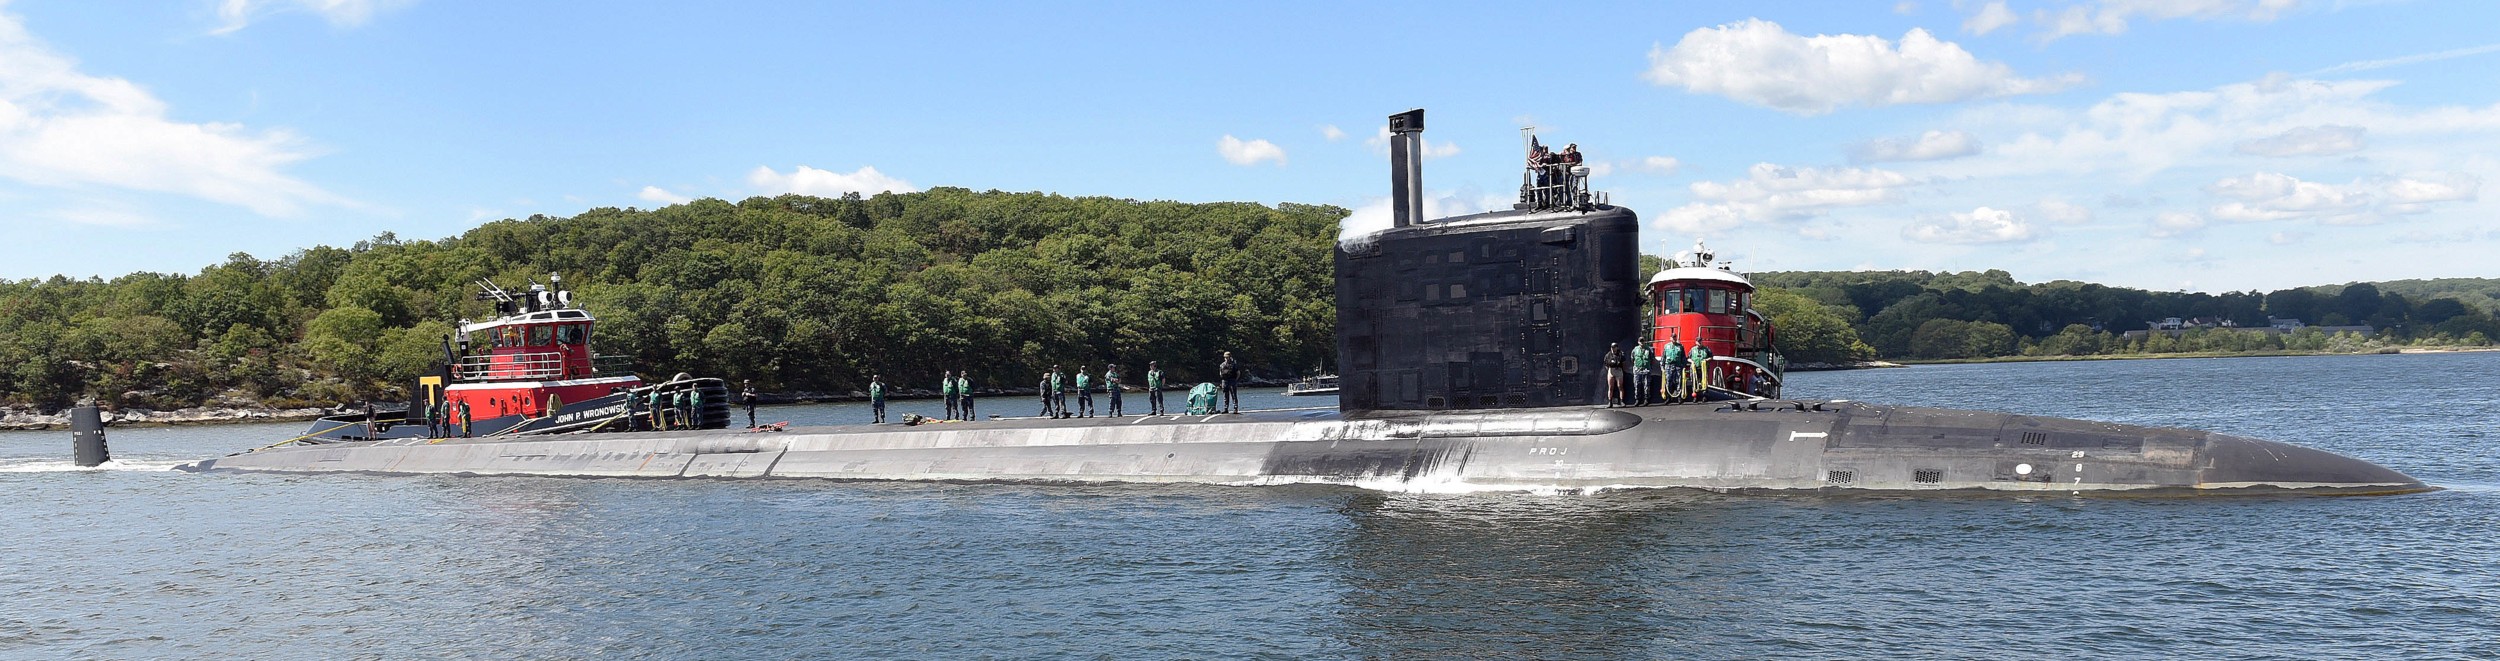 ssn-786 uss illinois virginia class attack submarine us navy 11